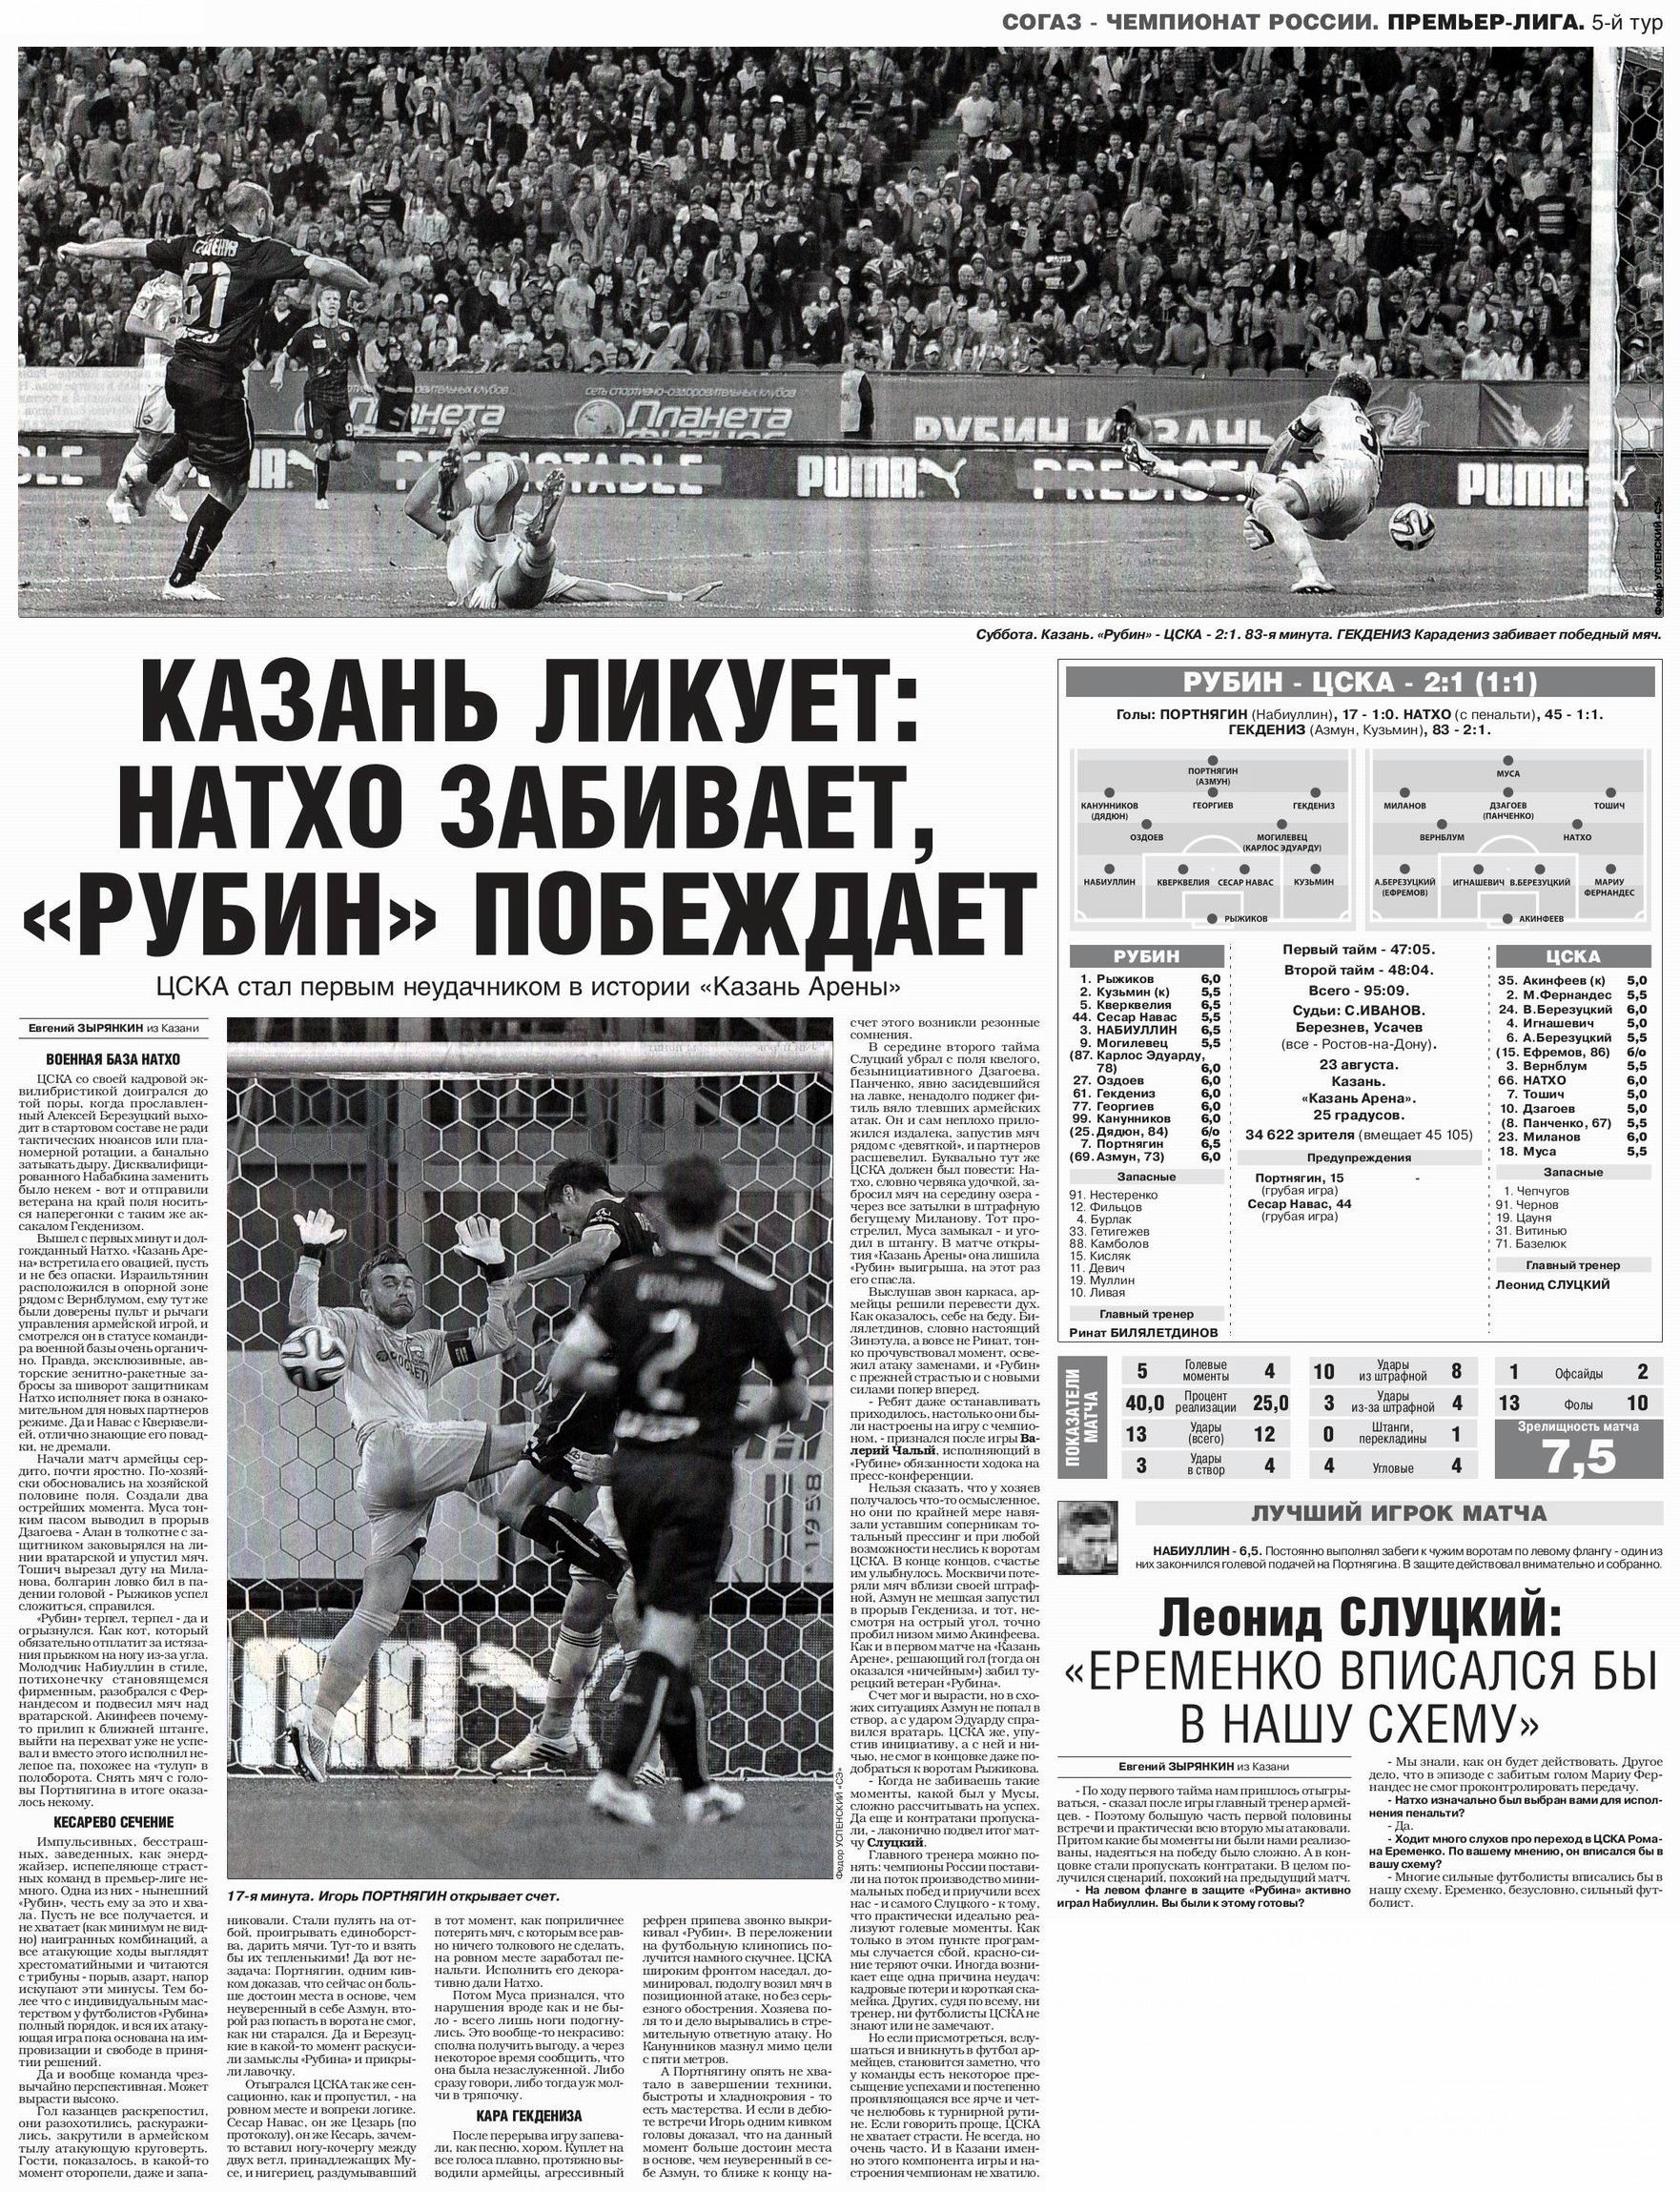 2014-08-23.Rubin-CSKA